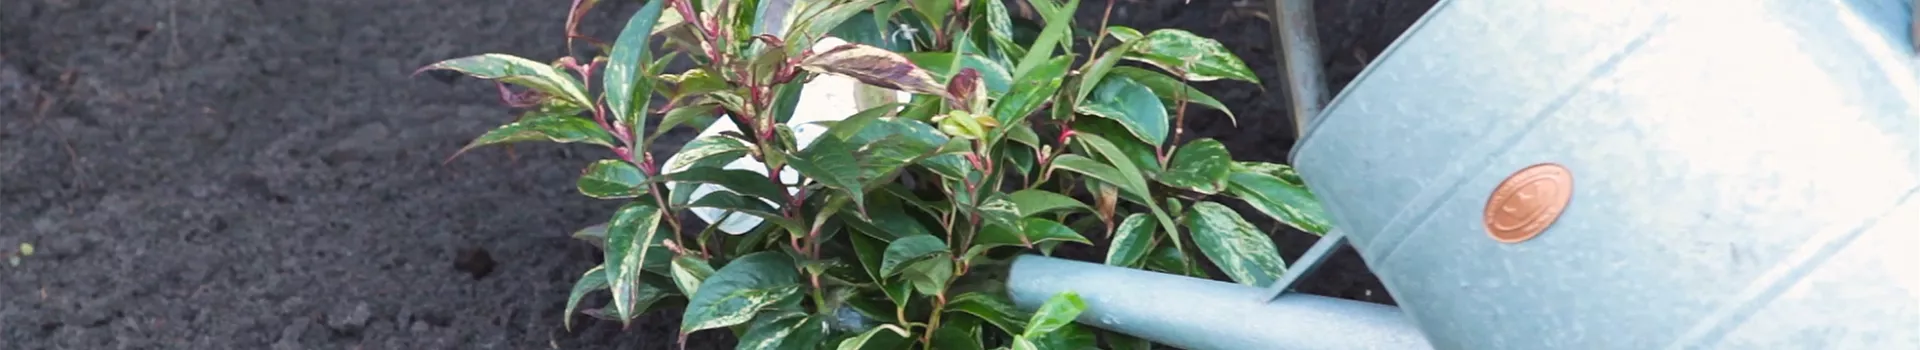 Traubenmyrte - Einpflanzen im Garten